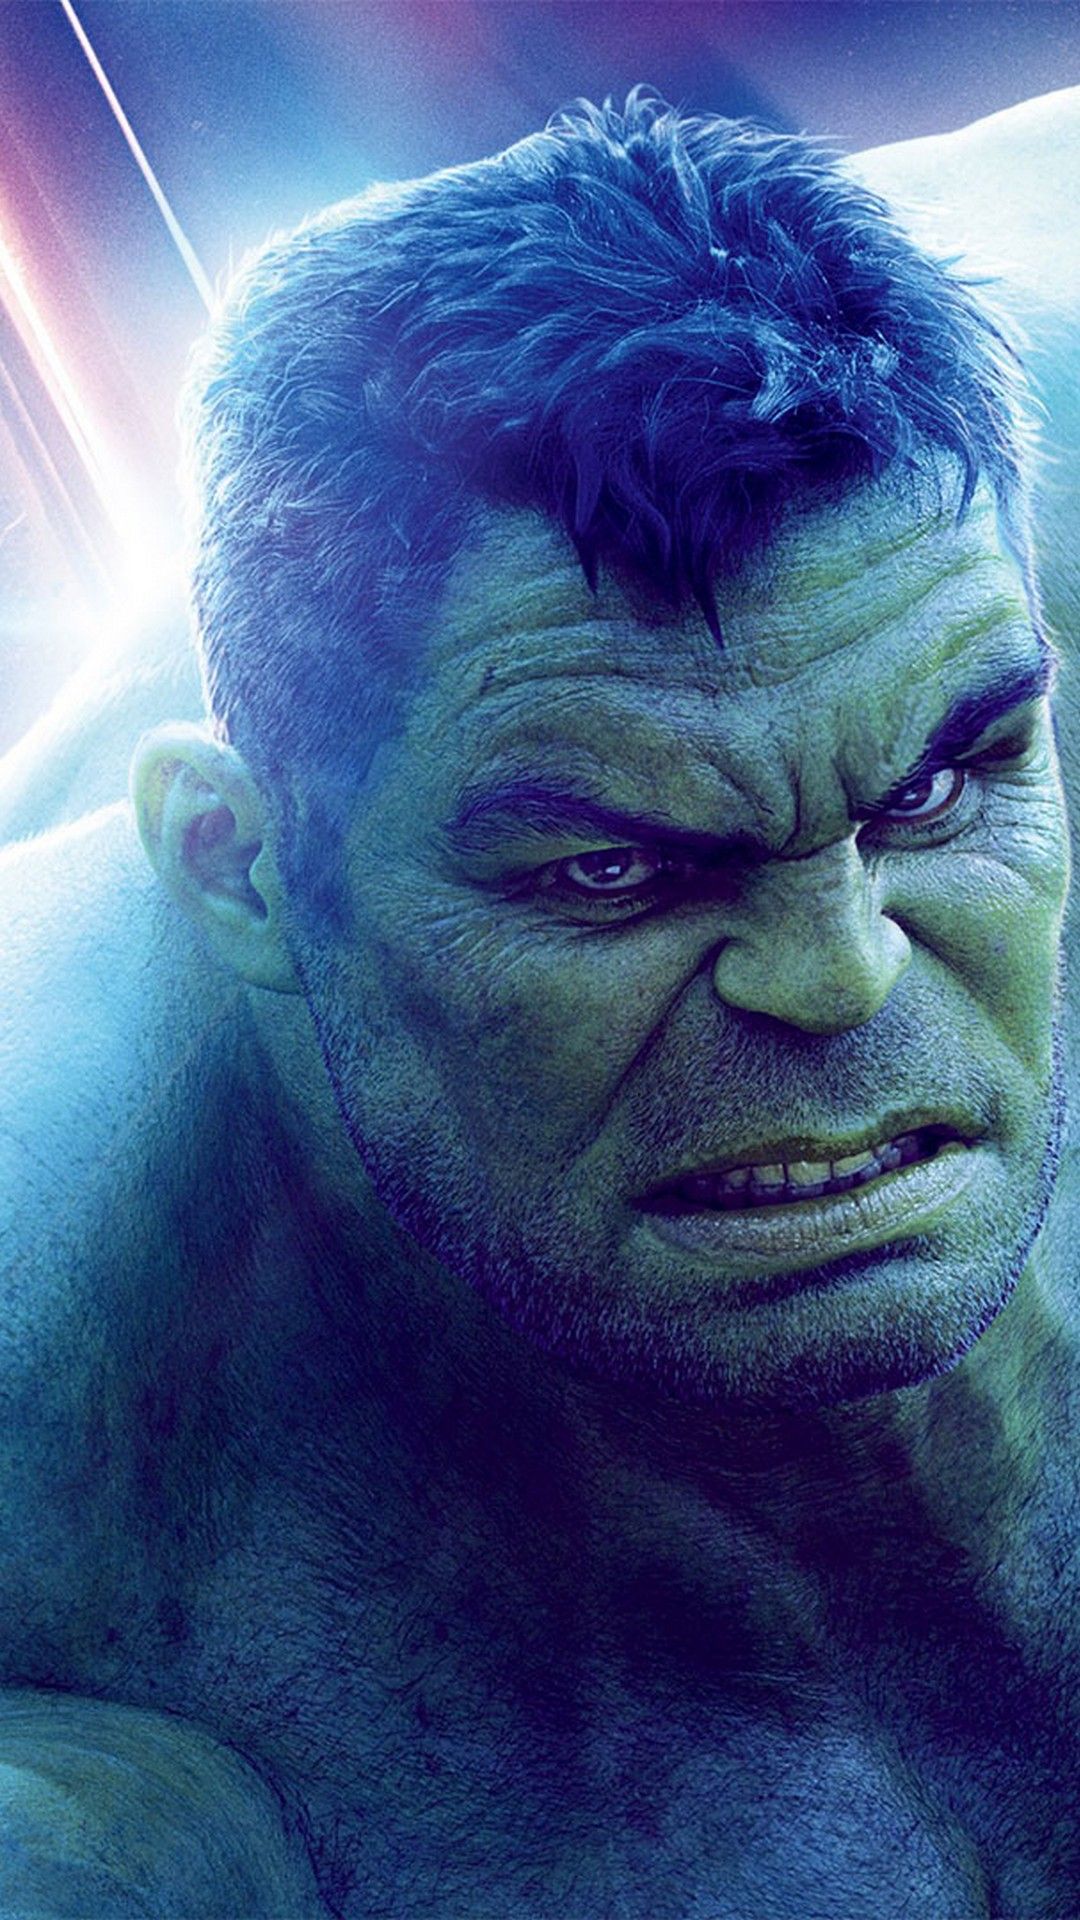 Hulk Avengers Endgame iPhone Wallpaper Movie Poster Wallpaper HD